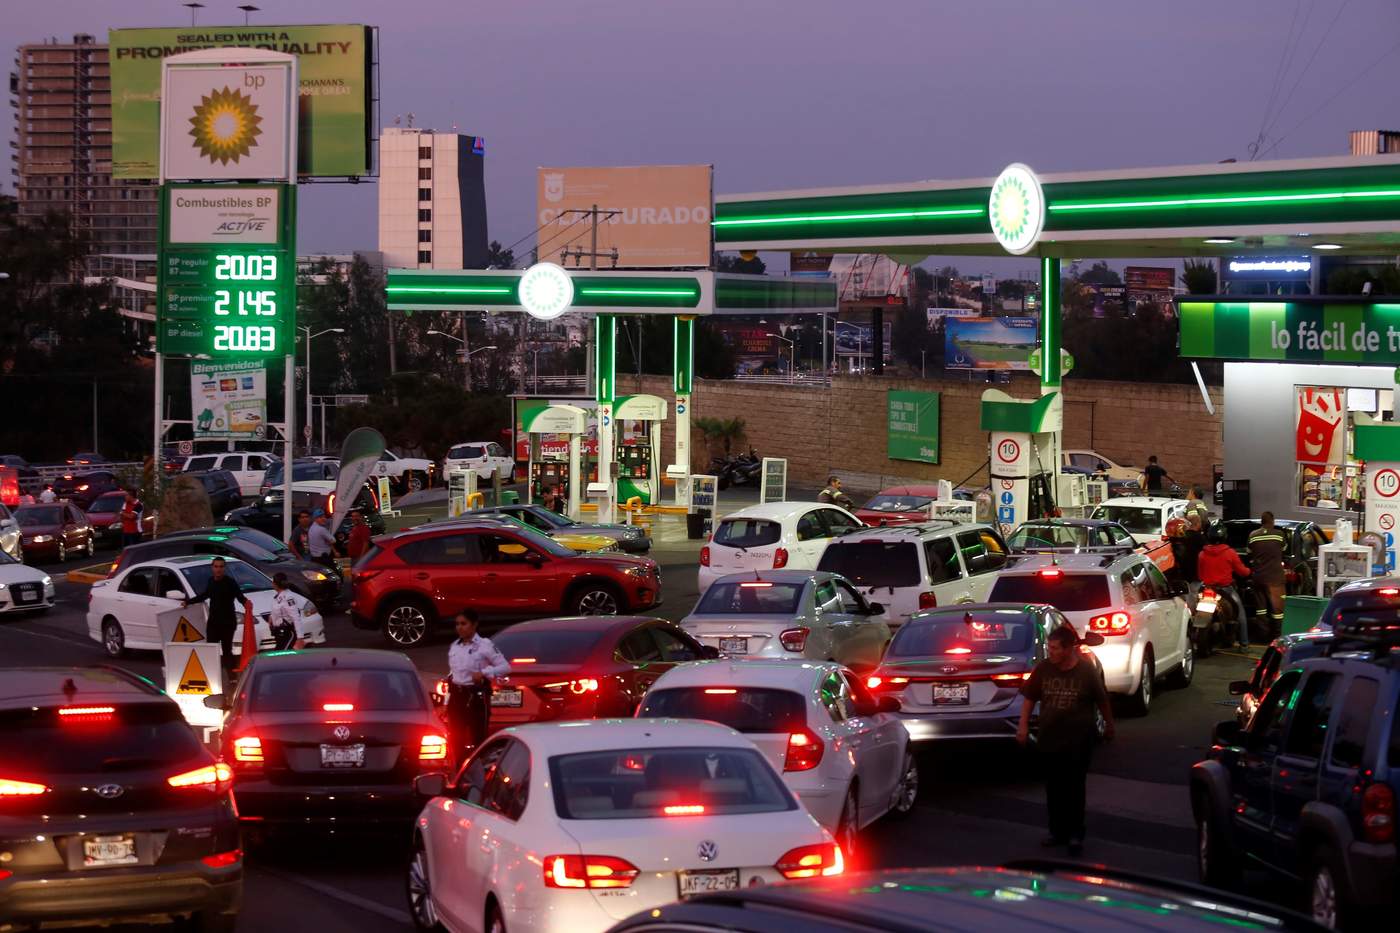 El gobernador de Jalisco, Enrique Alfaro Ramírez, pidió a Petróleos Mexicanos (Pemex) que ofrezca una explicación a detalle sobre el desabasto de gasolina que existe y cuándo se va a normalizar. (EFE)